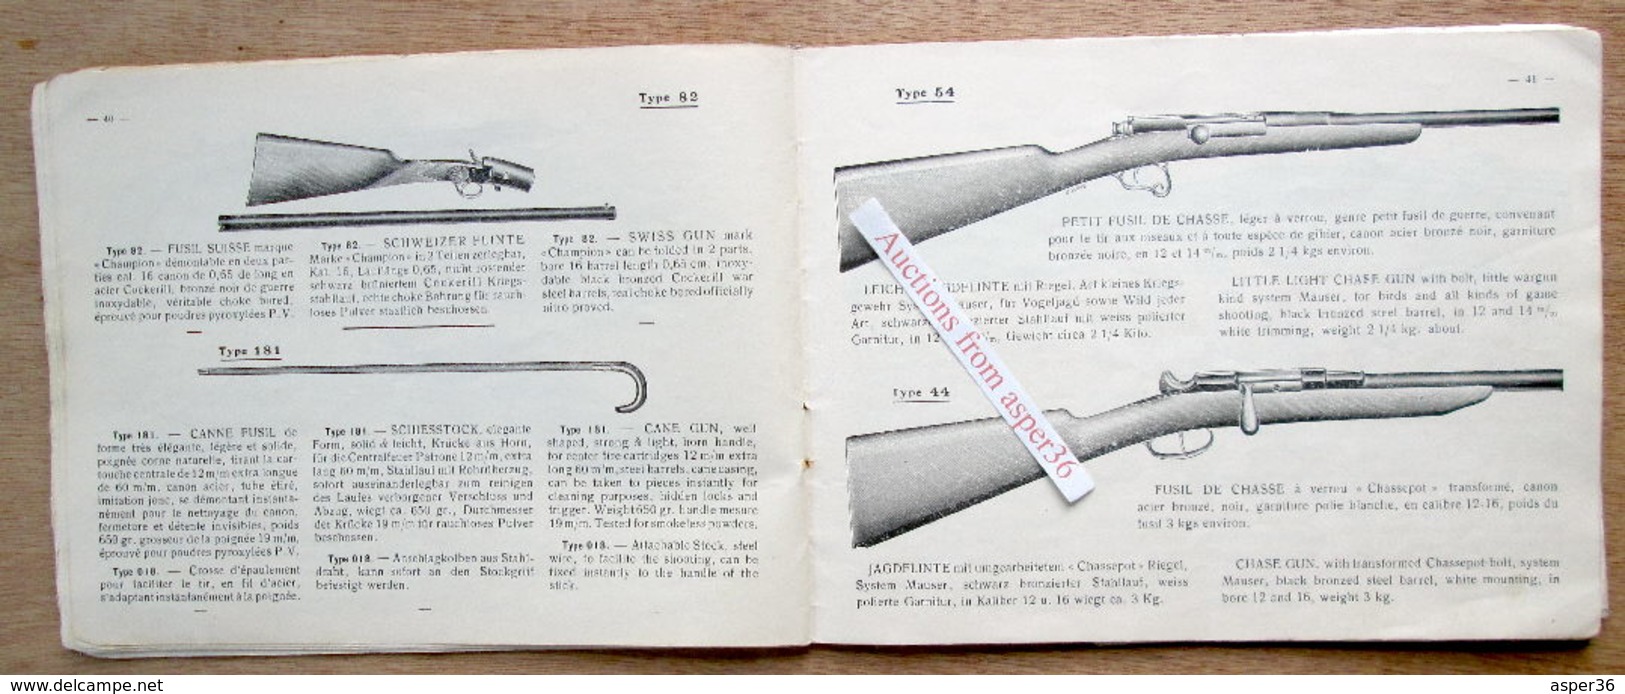 catalogue "Manufacture Générale D'Armes, Joseph Saive, rue Théodore Schwann, Liége"